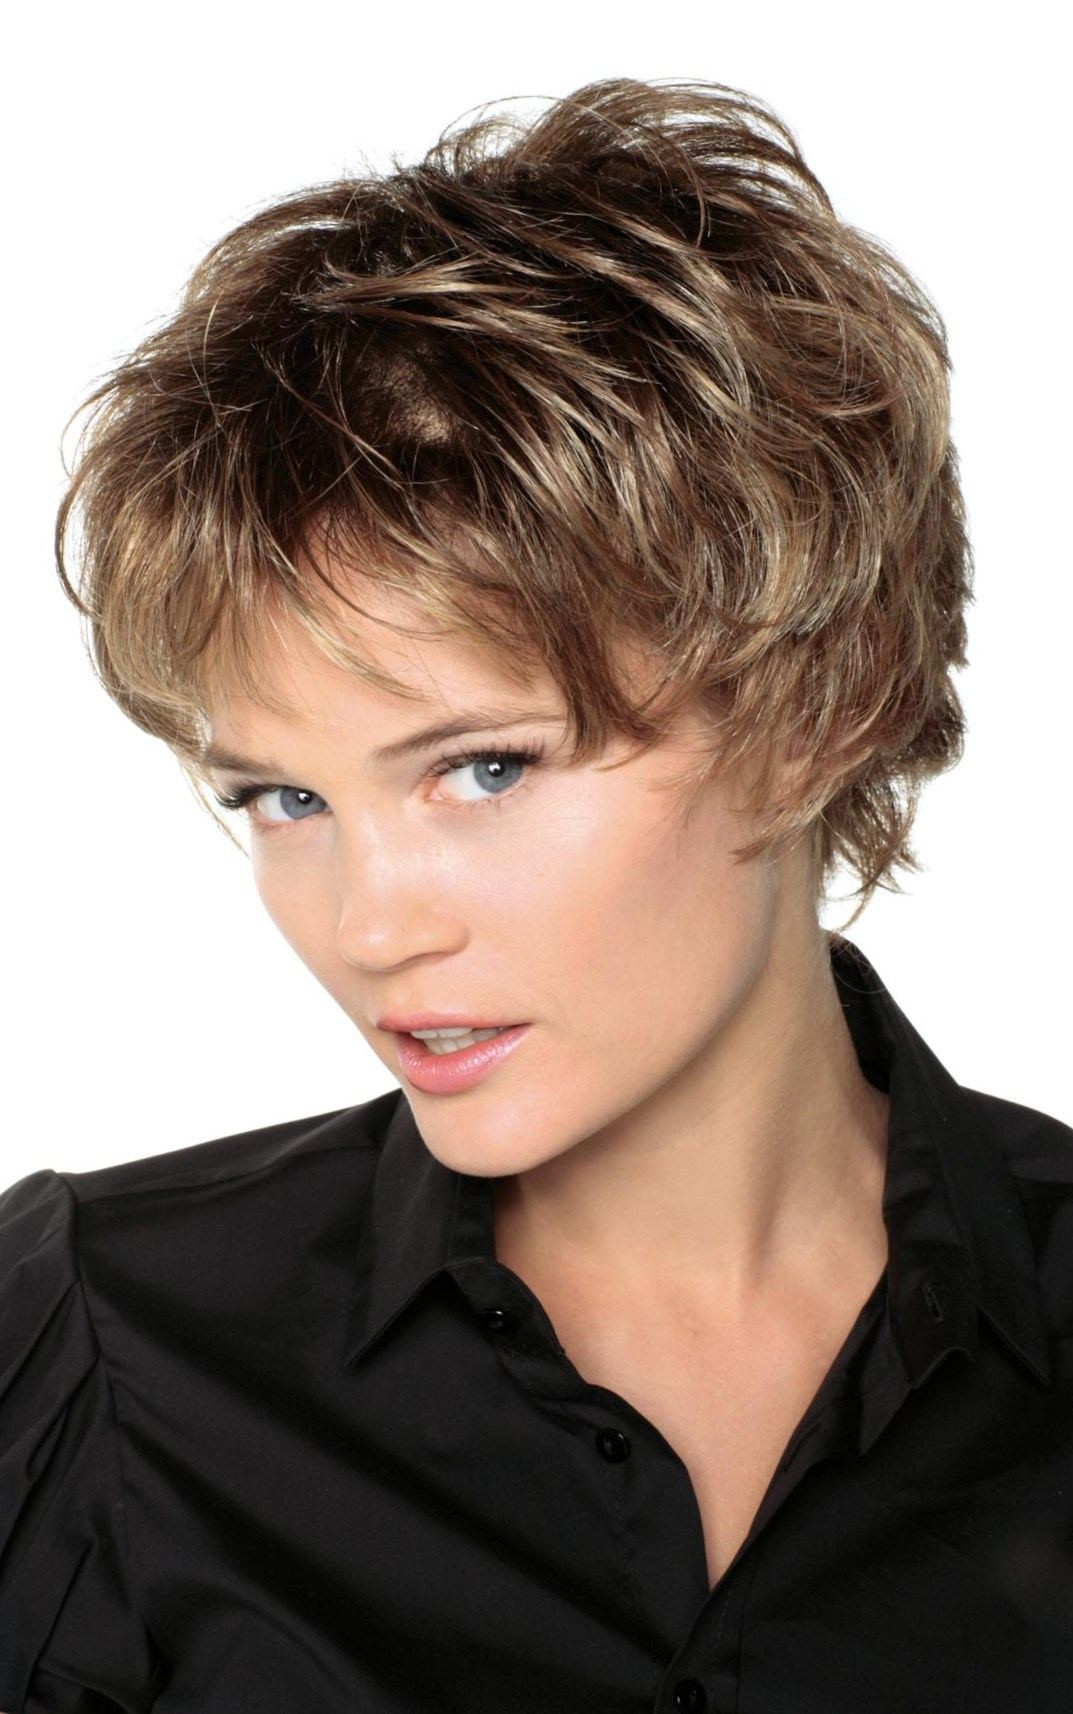 Couleur Cheveux Tendance 2022 Femme 60 Ans Collection : 20 plus belles idées coiffure courte pour femme 60 ans